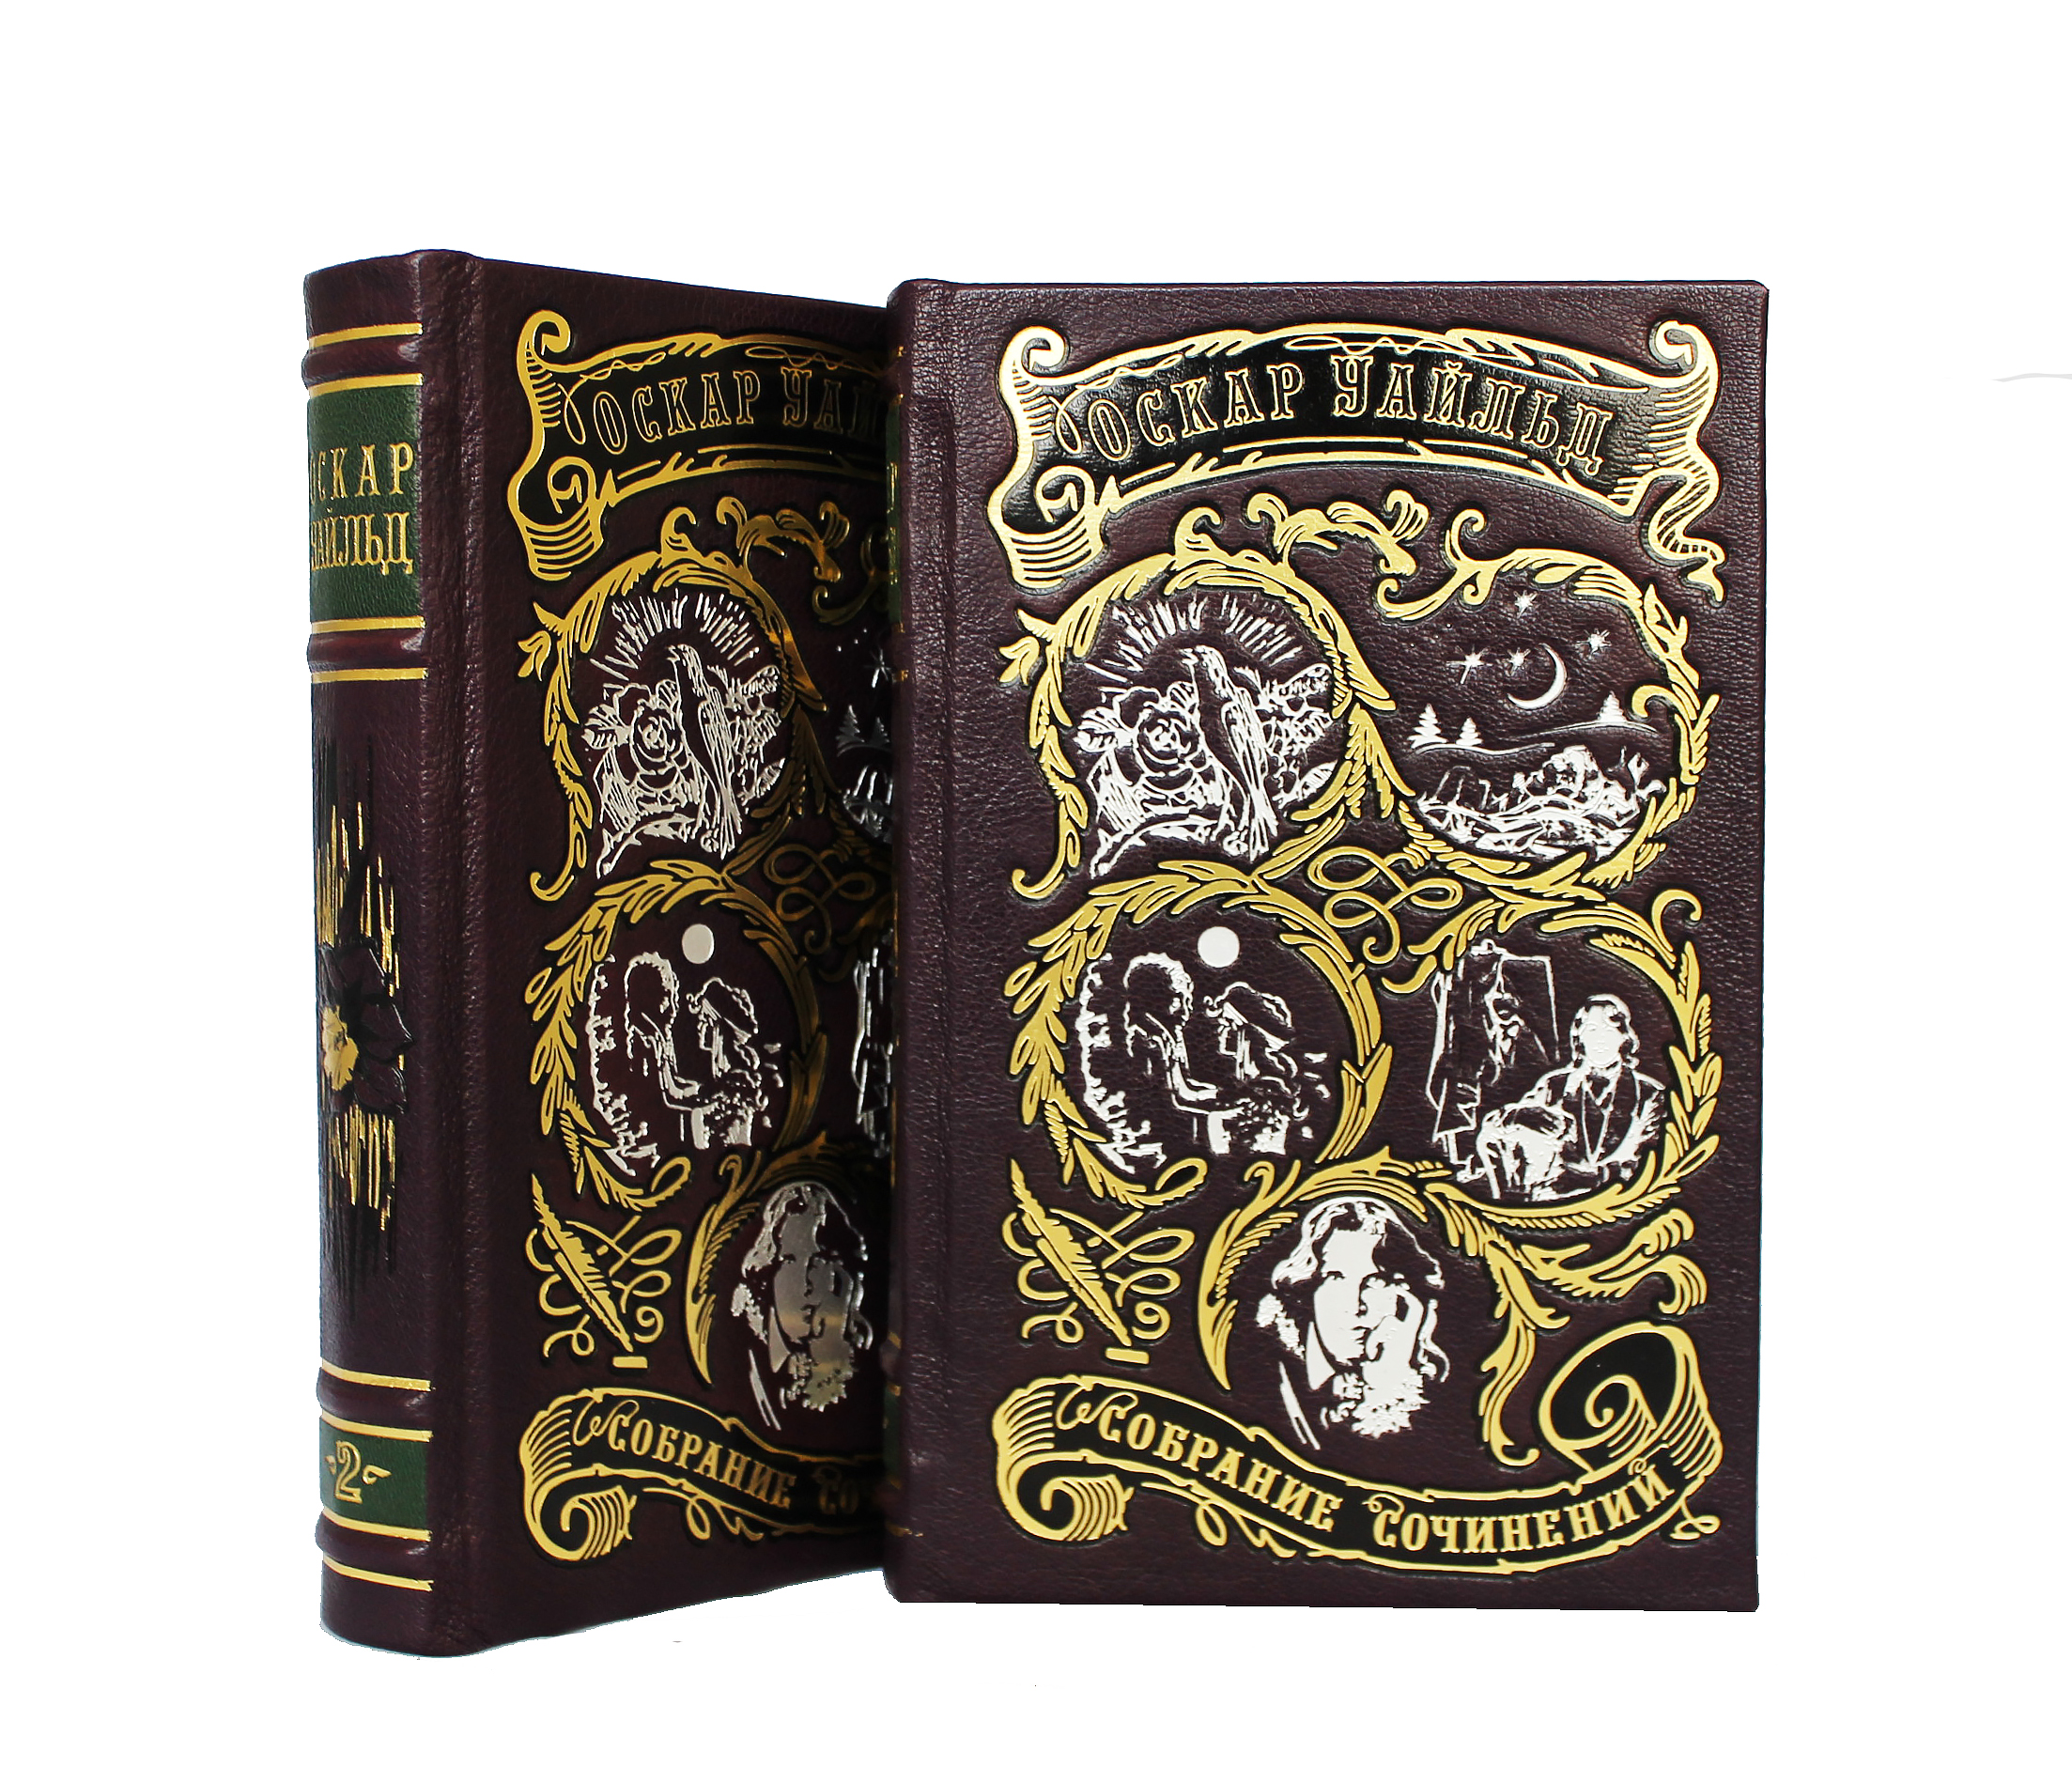 Избранные произведения Оскара Уайльда в 2-х томах в кожаном переплете с тиснением золотой фольгой